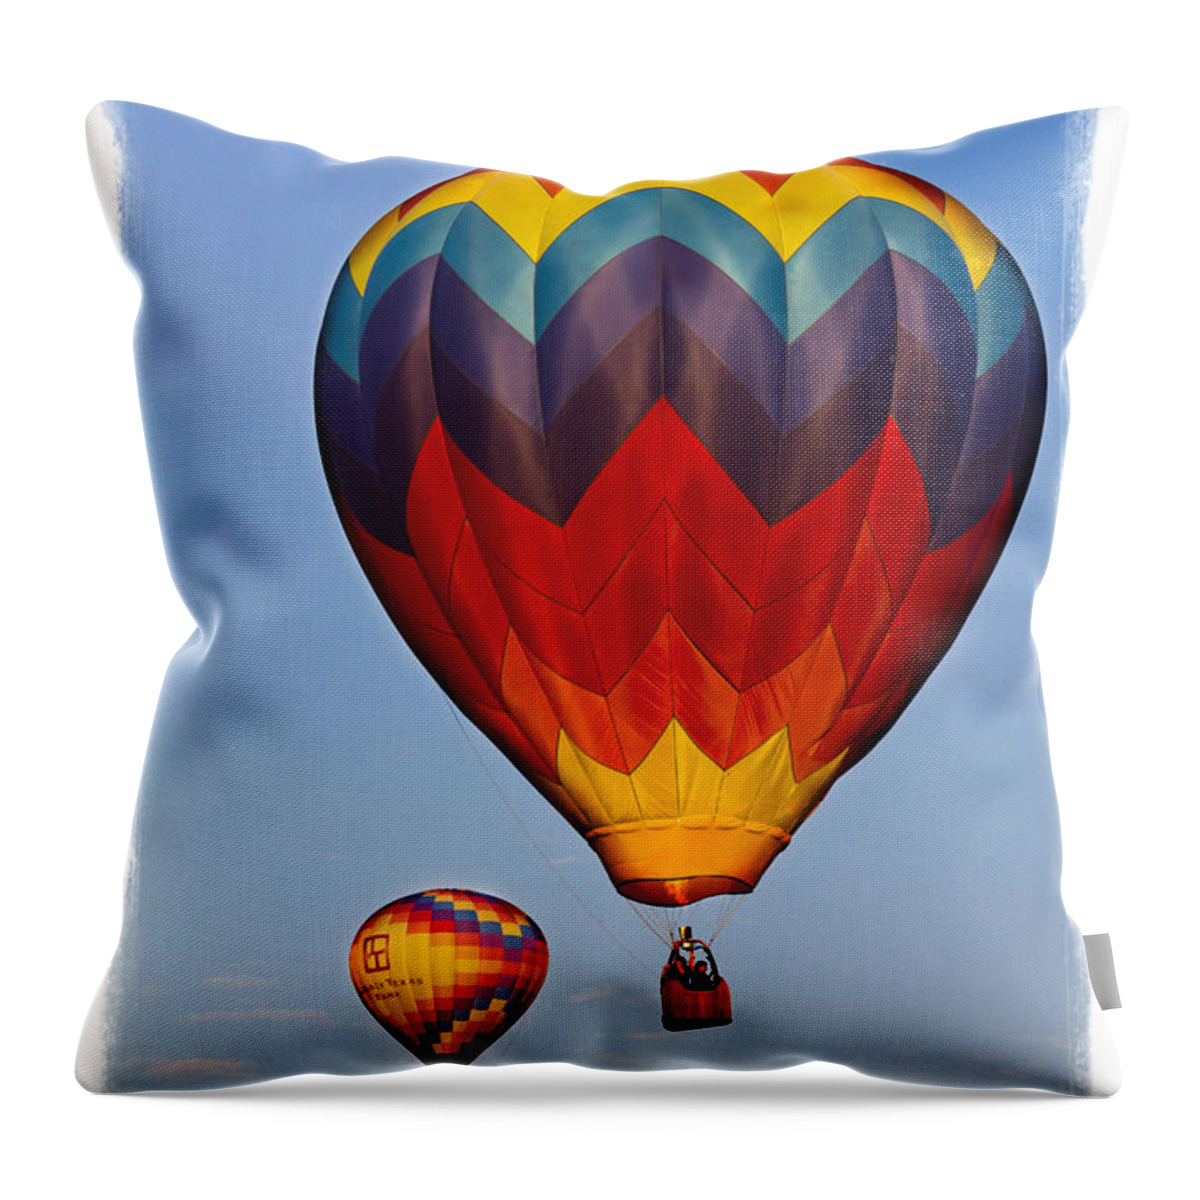 Balloon Throw Pillow featuring the photograph Hot air balloons #2 by Elena Nosyreva